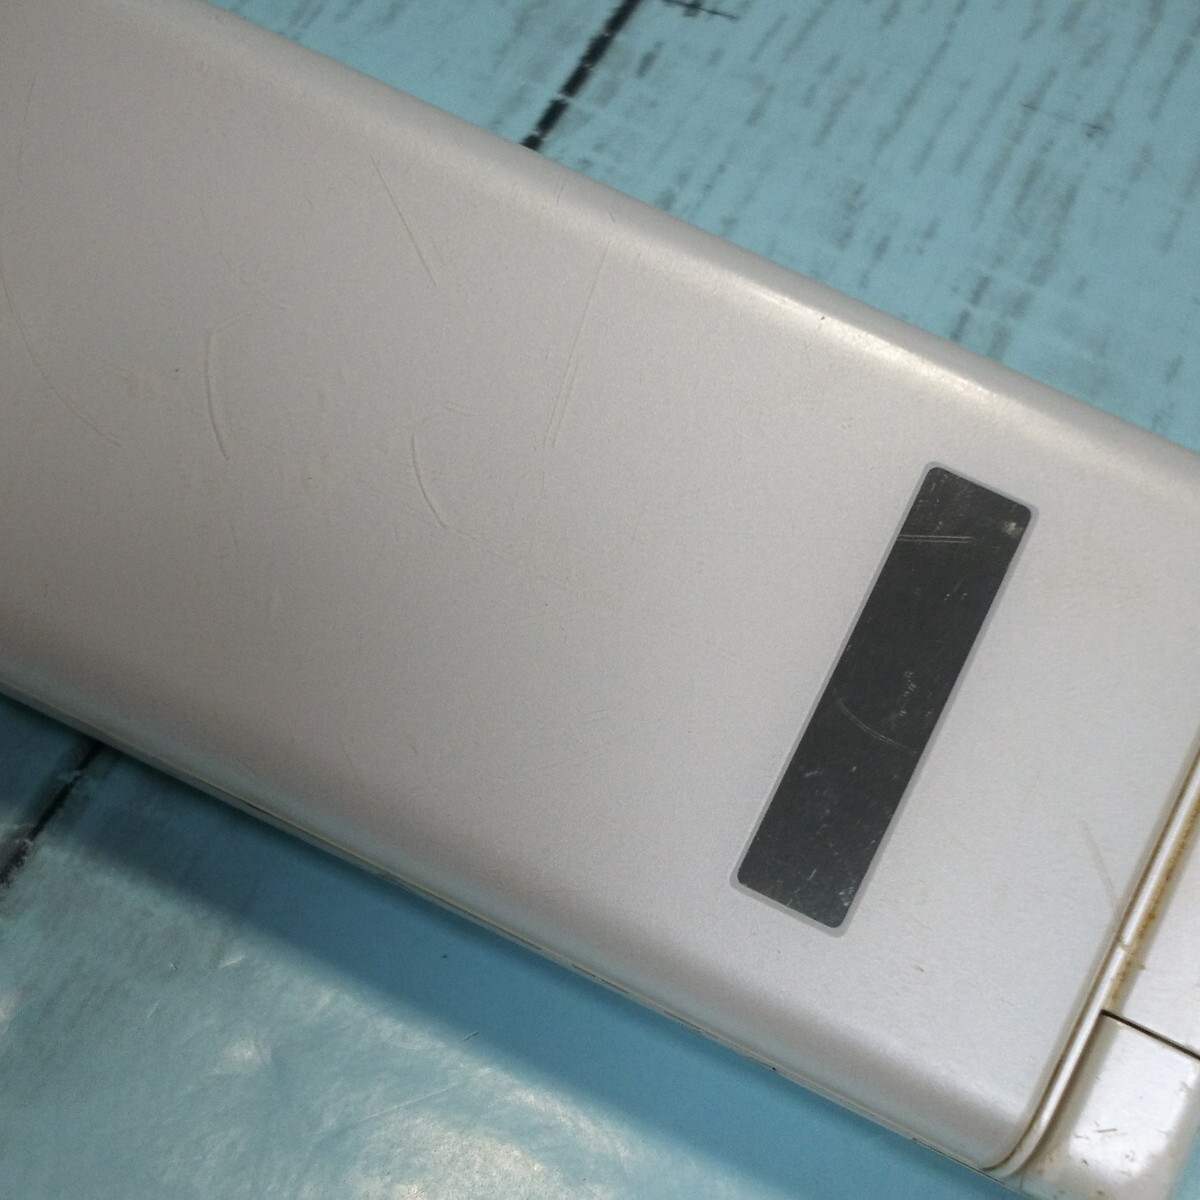 Y!mobile 702KC Kyocera DIGNO мобильный телефон 2 белый корпус White ROM SIM разблокирован .SIM свободный 222785